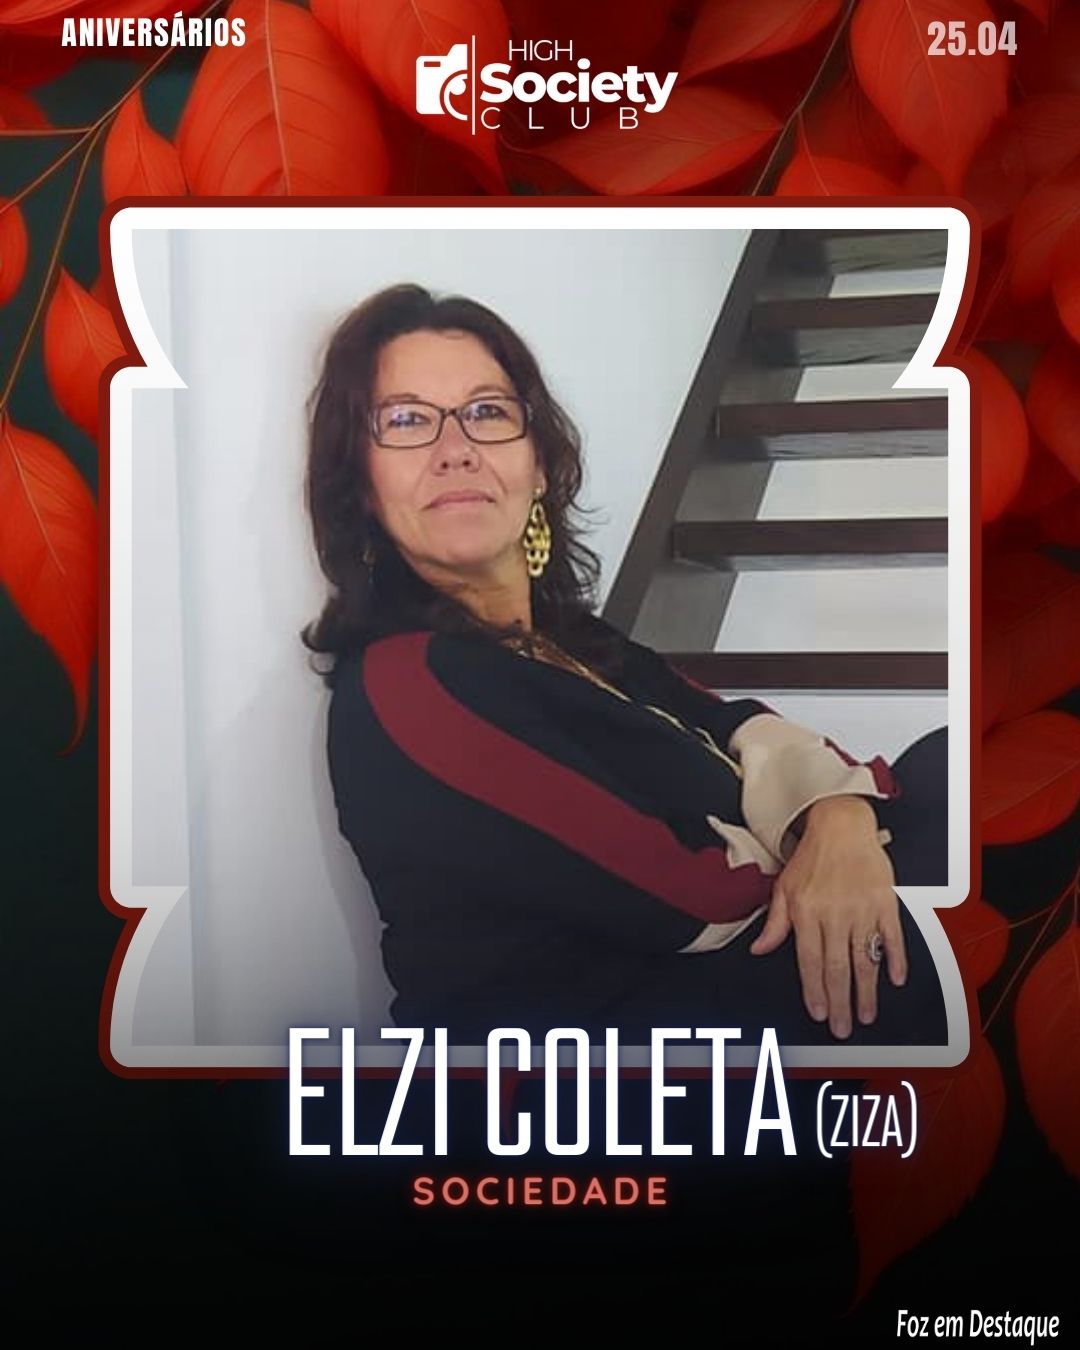 Elzi Coleta -  Ziza
High Sociedty Club Foz em Destaque